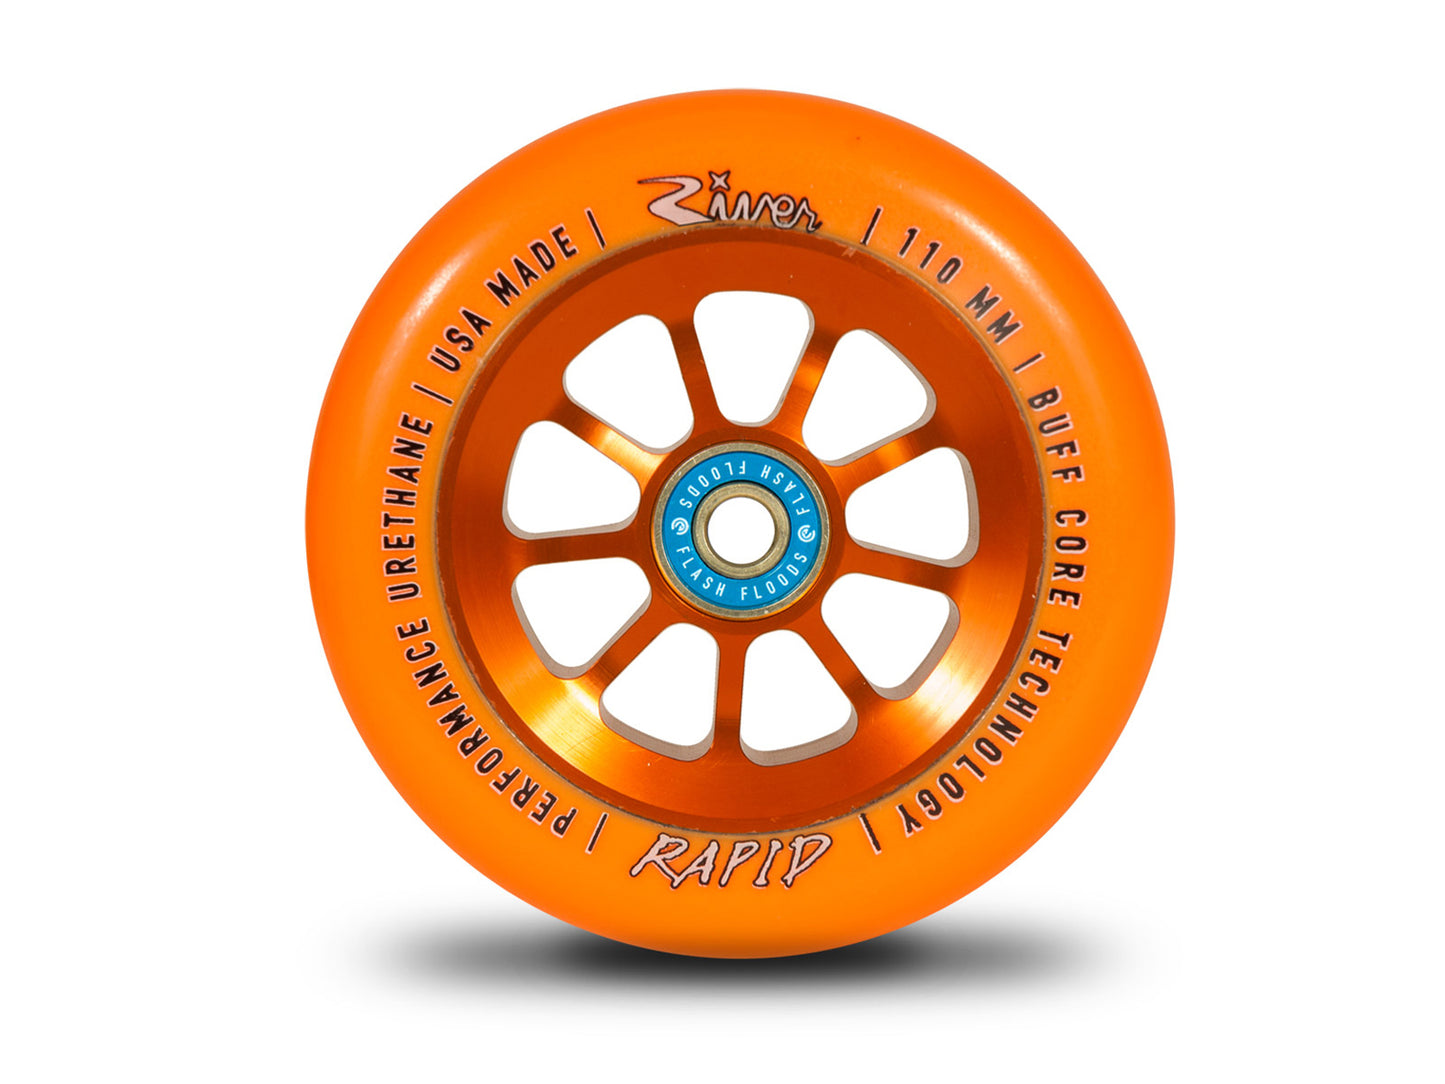 River Wheel Co – Natural “Sunset” Rapids 110mm (Orange on Orange)